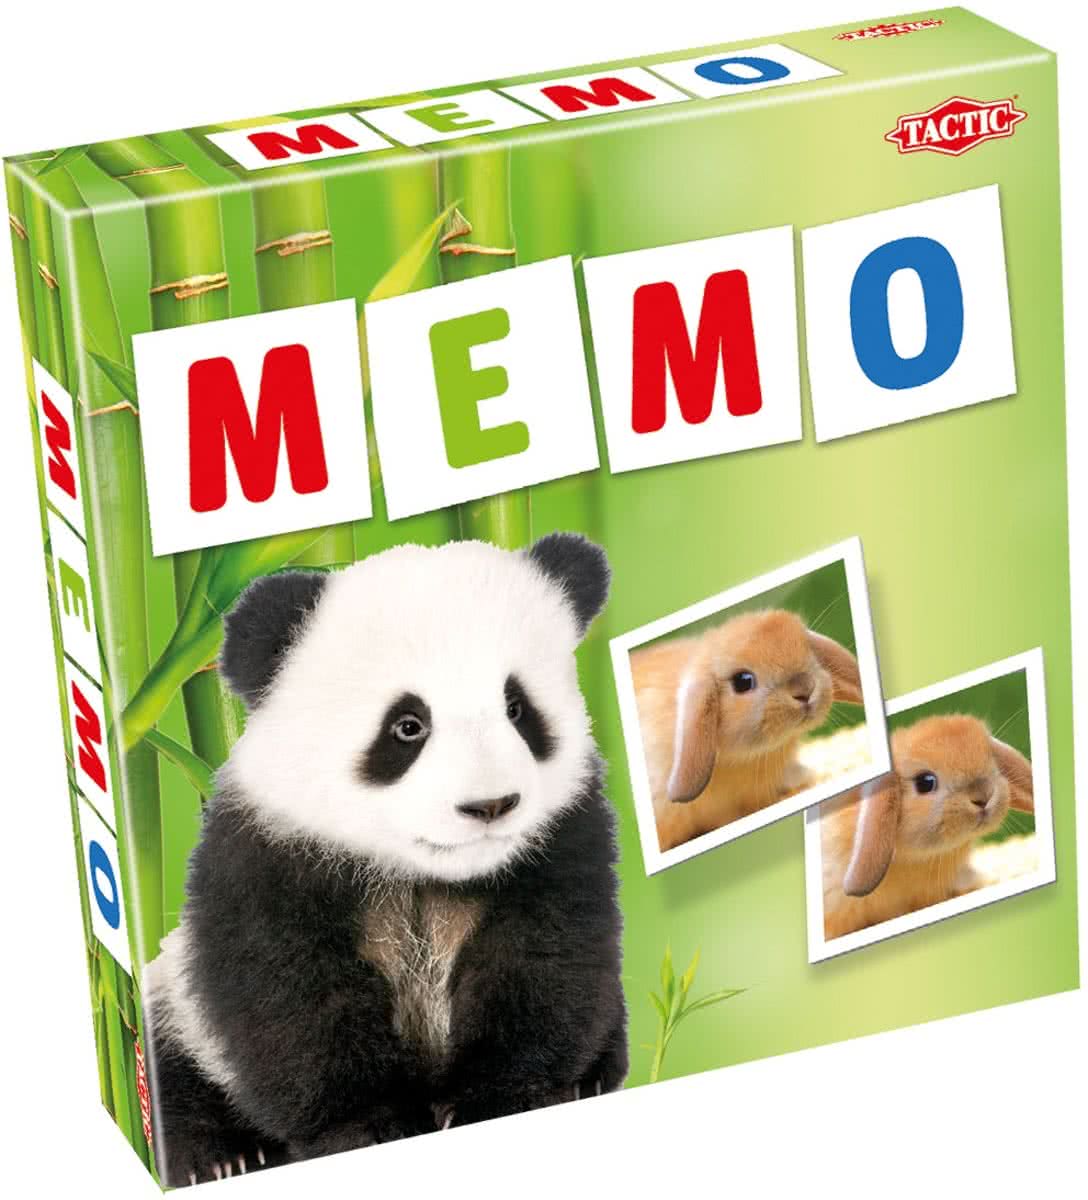 Animals Babies Memo - Kinderspel